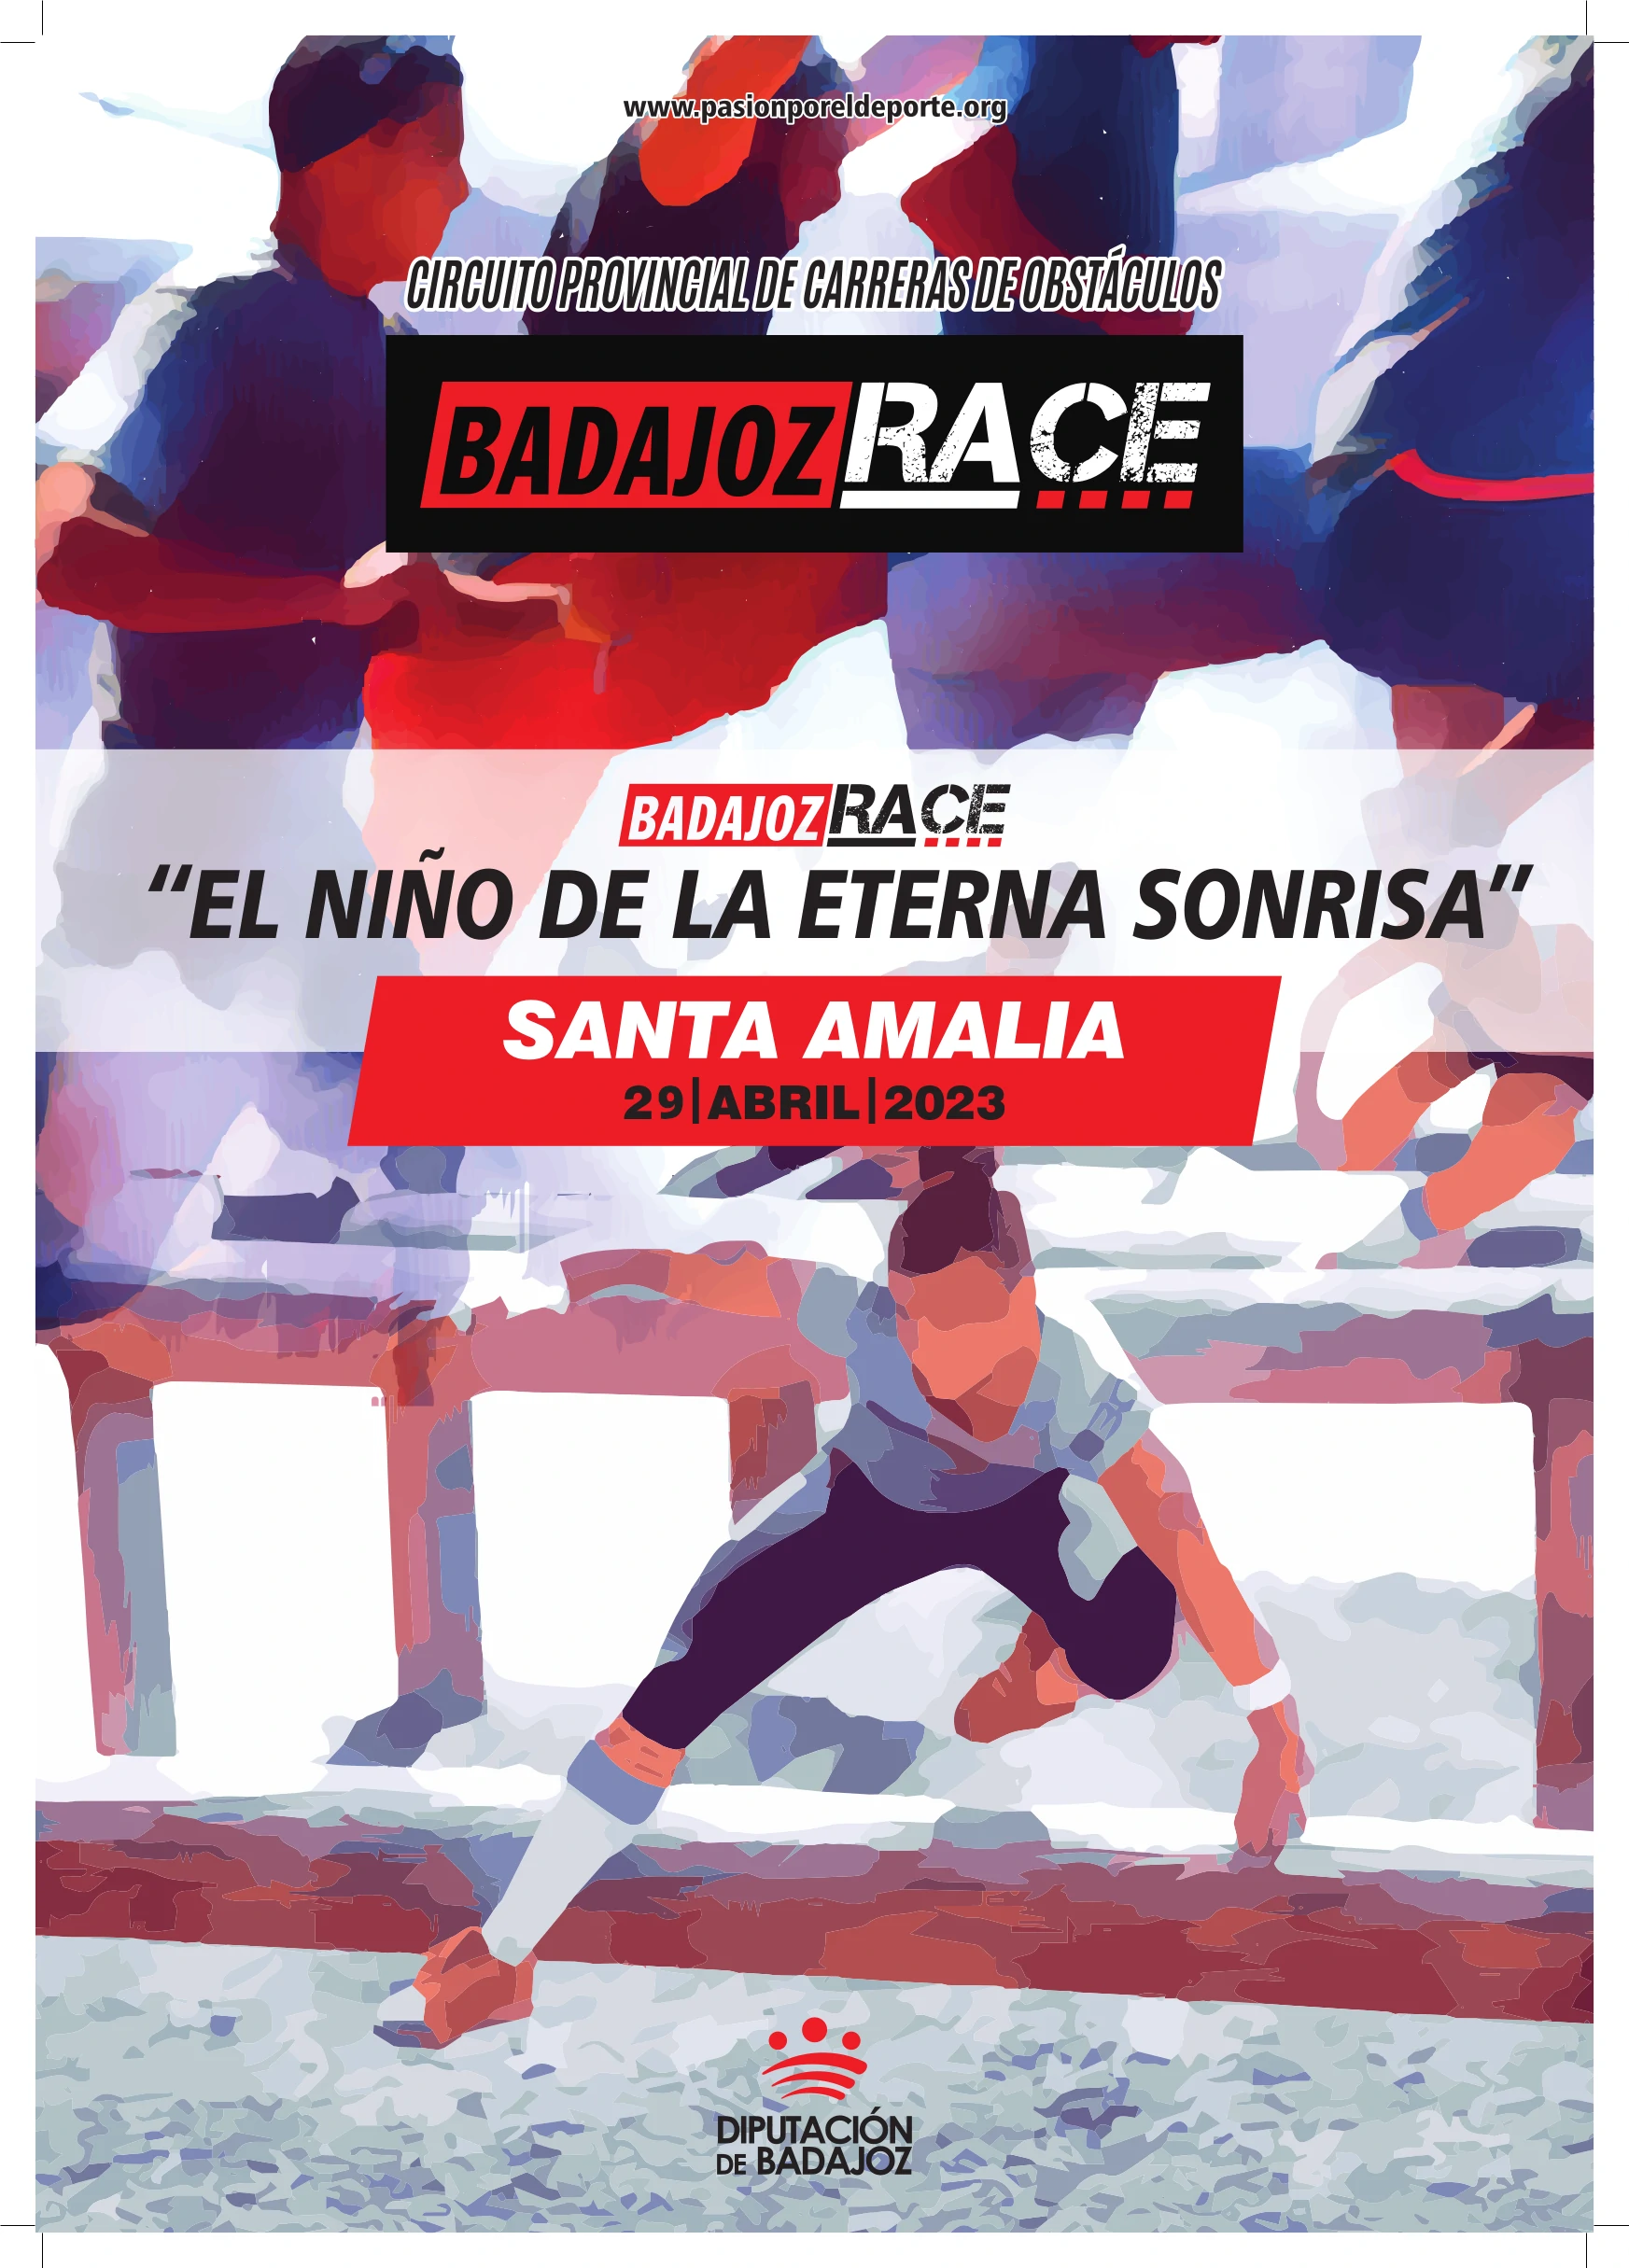 Santa Amalia. Badajoz Race<br />«El niño de la eterna sonrisa»